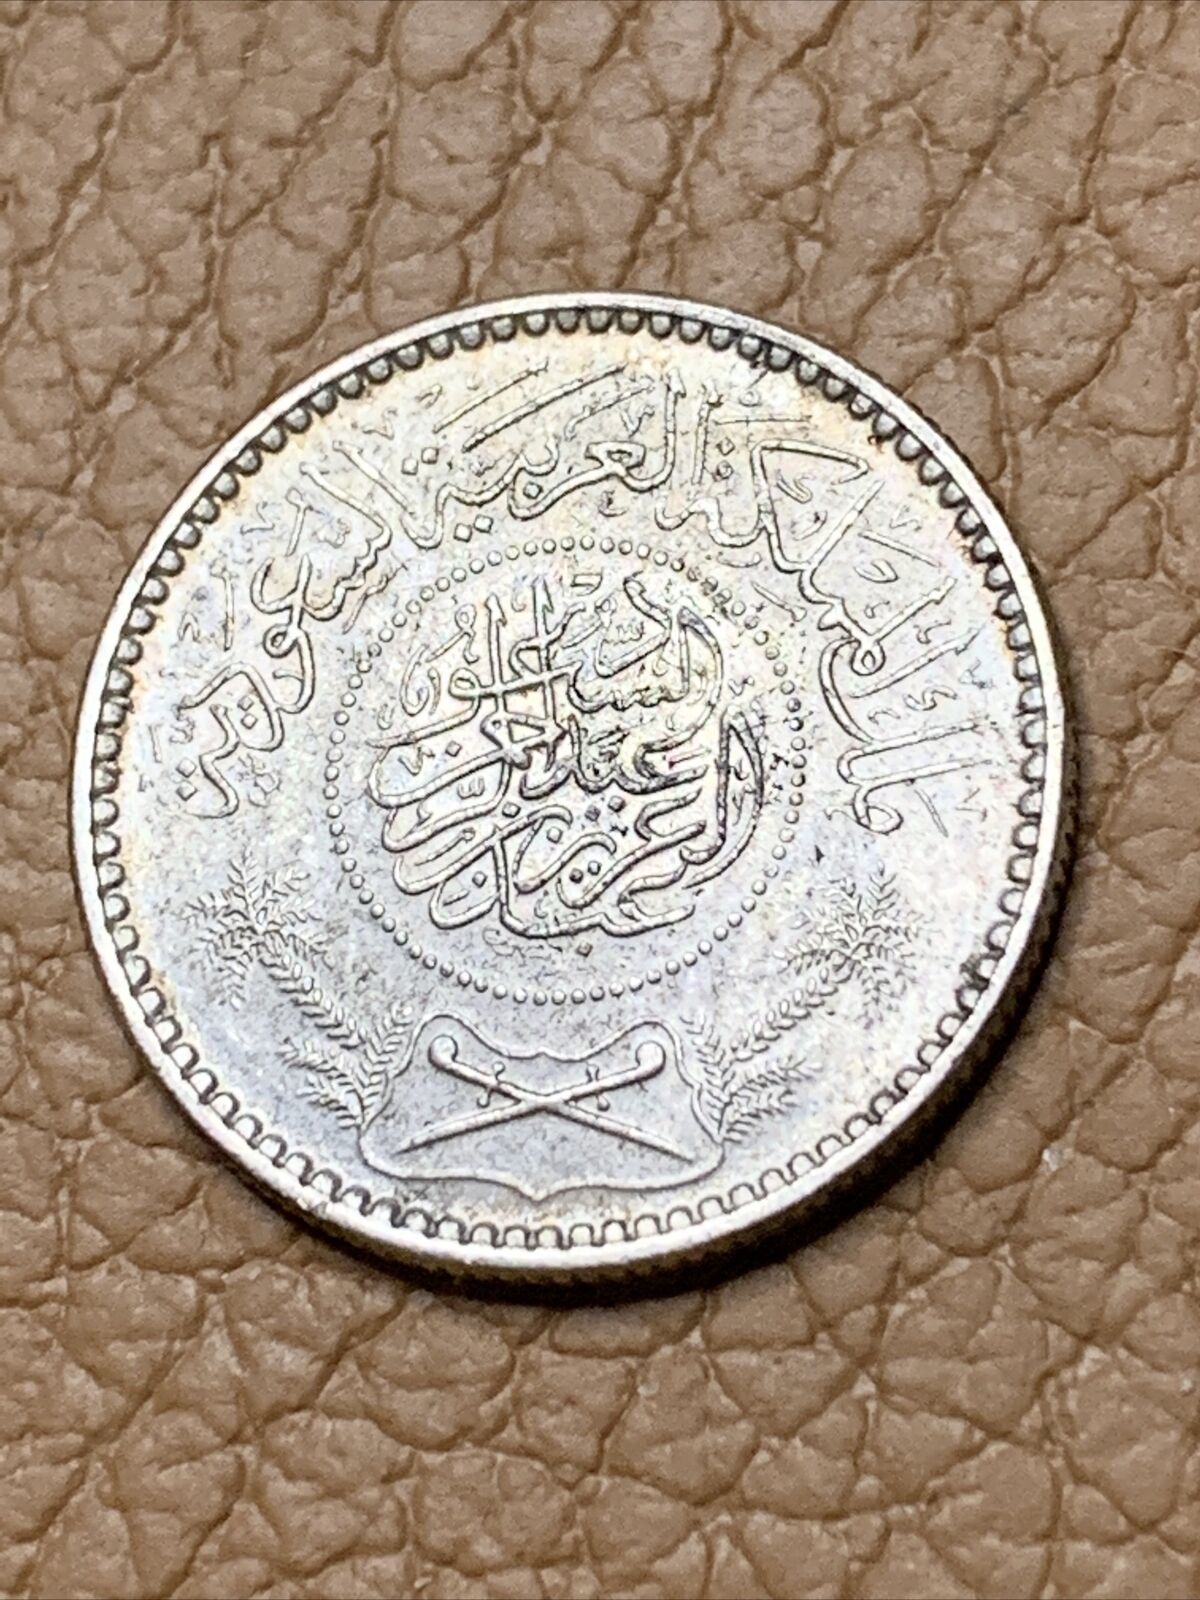 1935 Saudi Arabia 1/4 Riyal Silver Coin. High Grade! Beautiful Coin